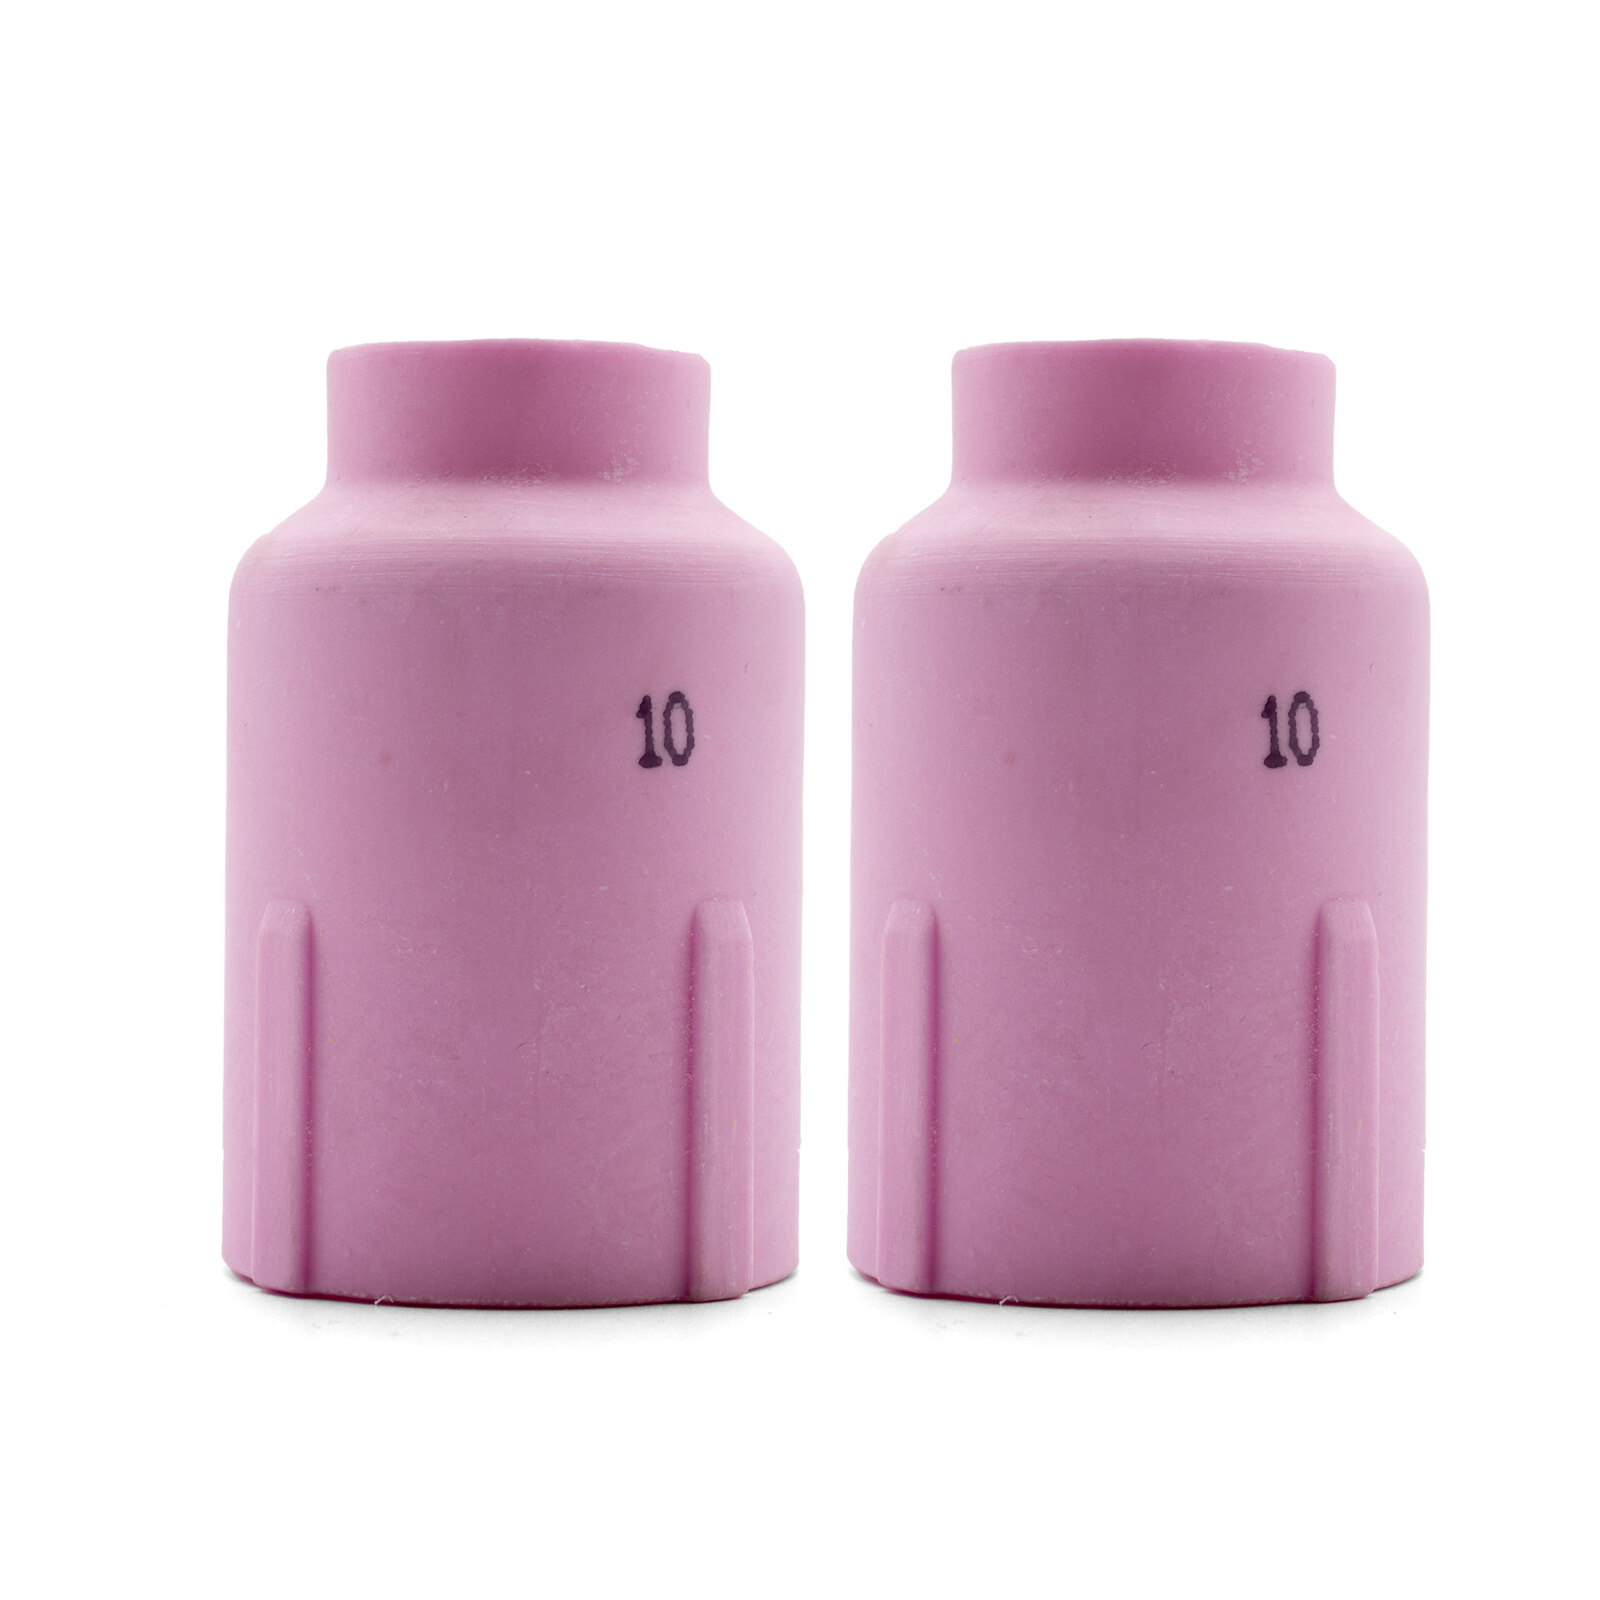 2 x TIG Ceramic Cup Nozzle #10 GAS LENS LARGE DIAMETER